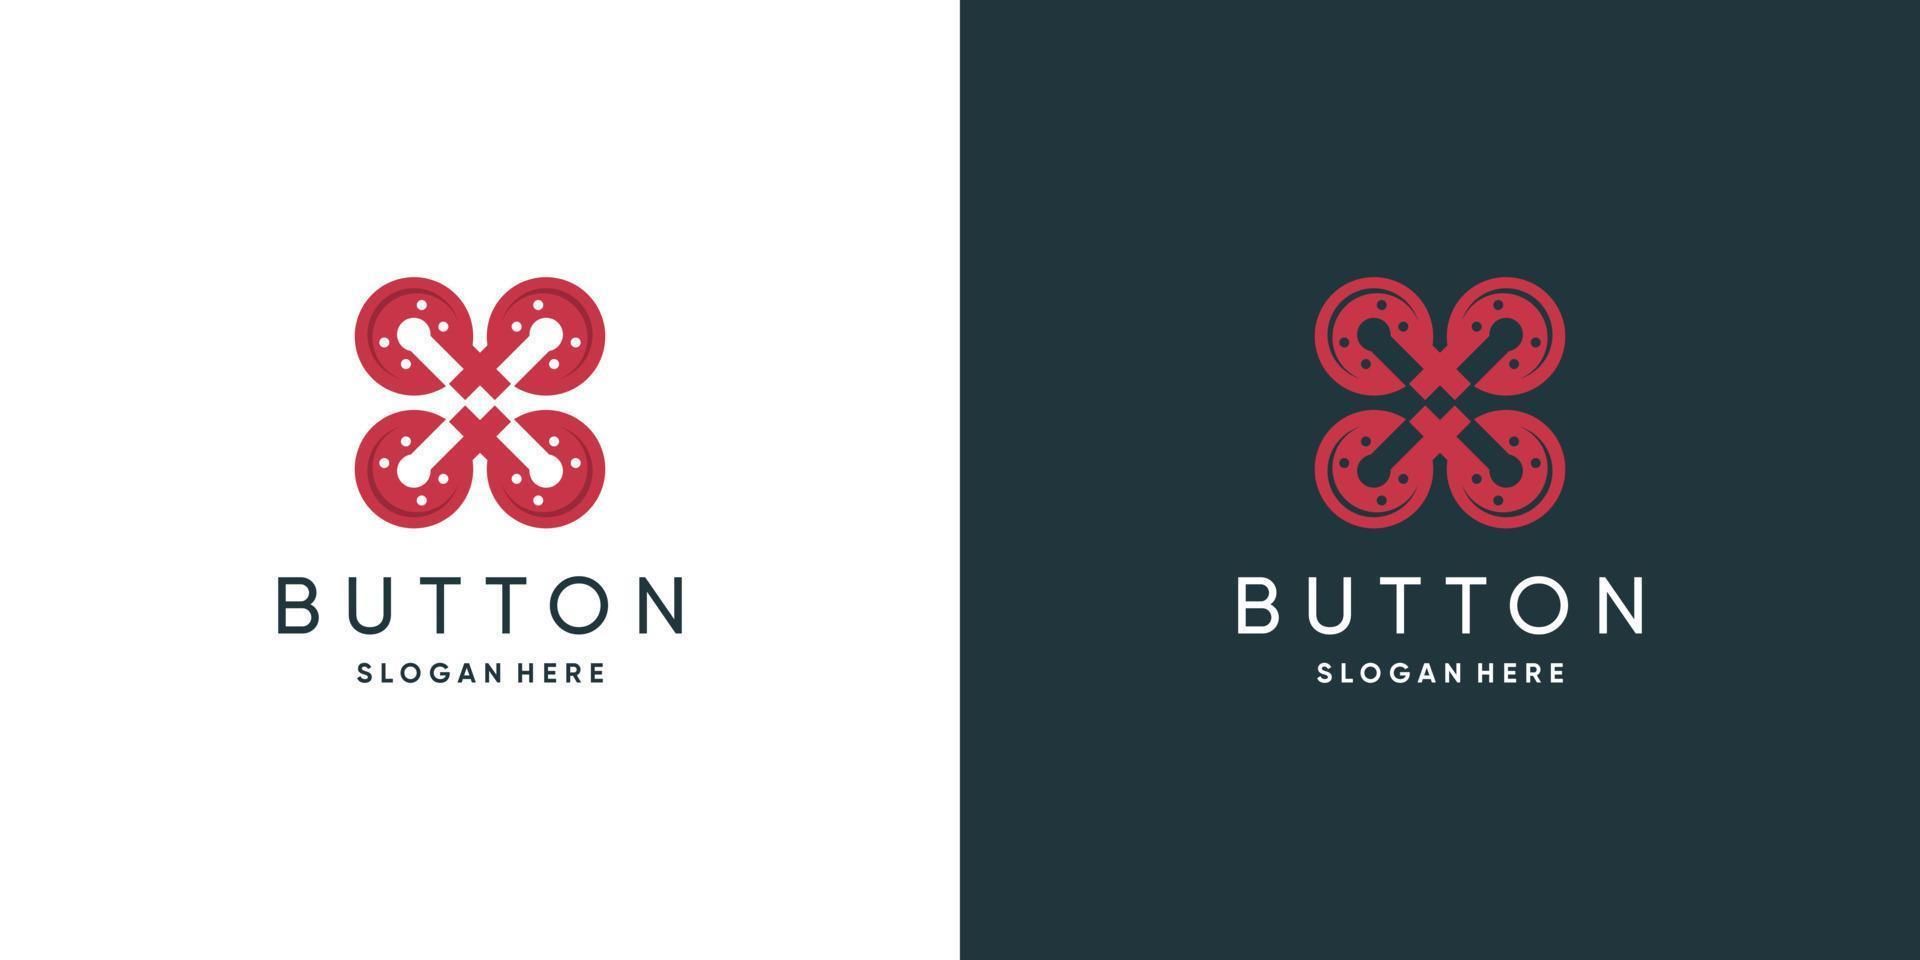 Fashion logo design with button concept idea vector